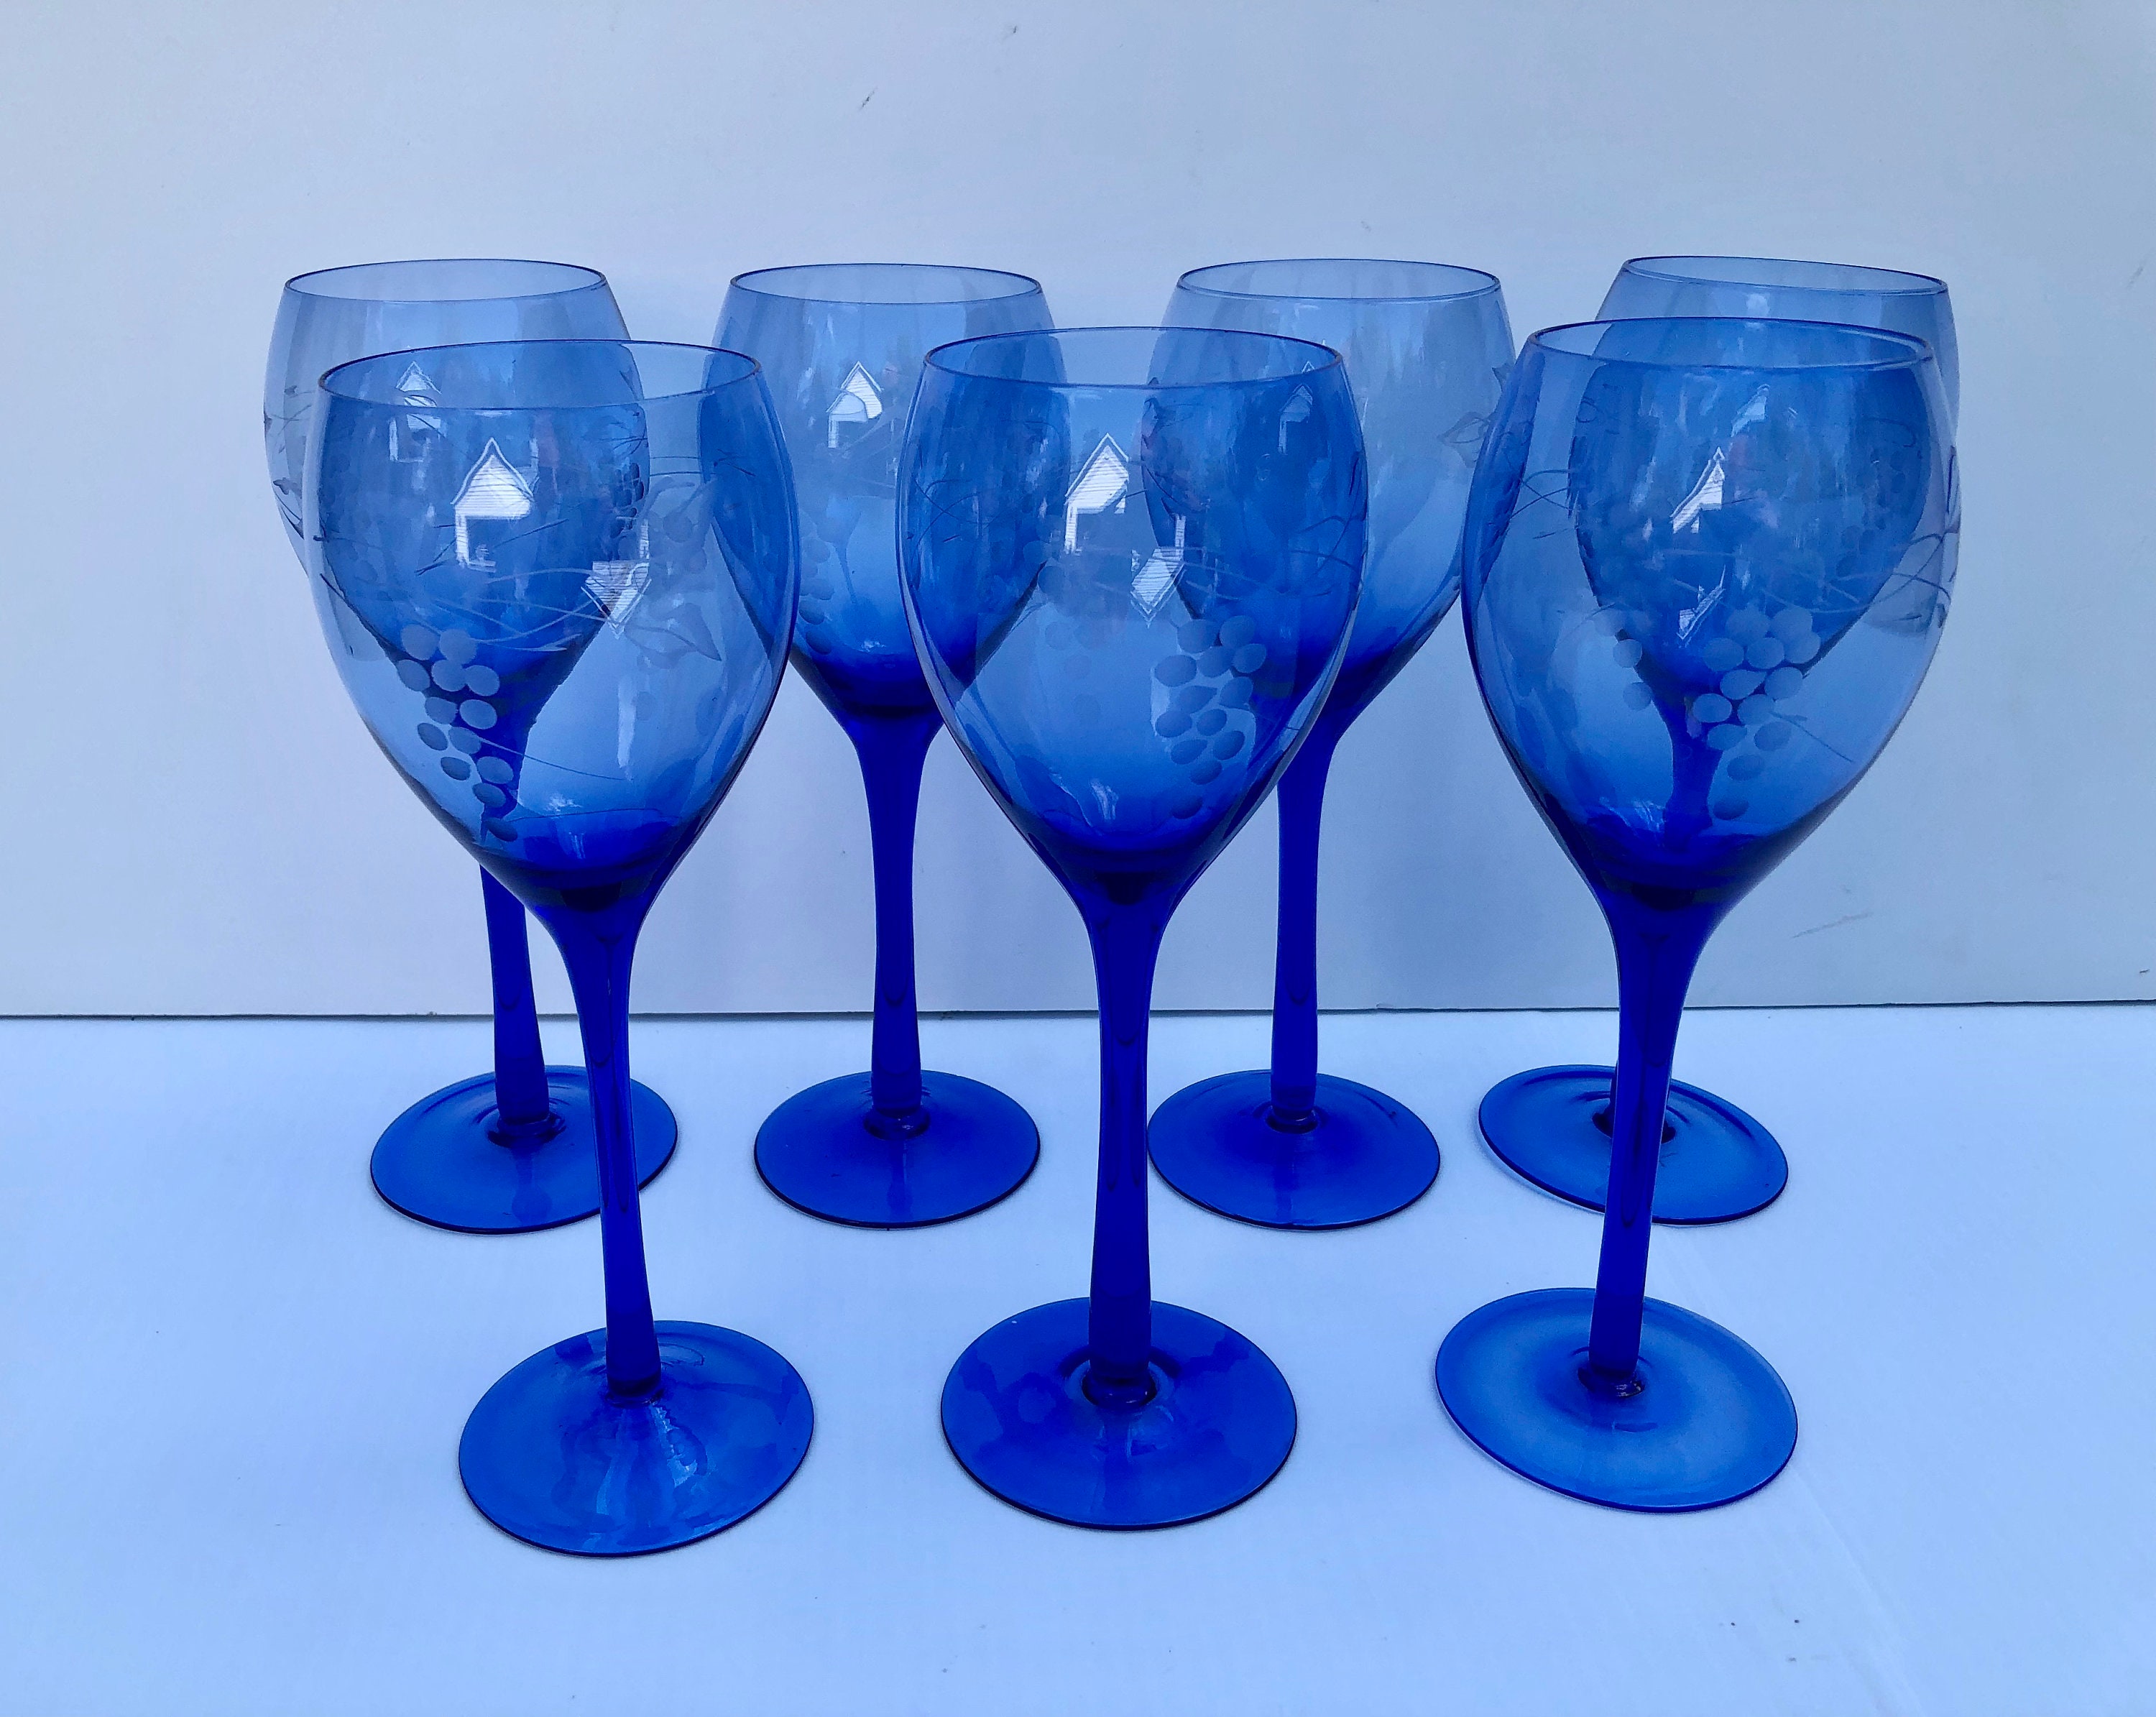 Set of 4 blue tinted wine glasses #BlueGlass #VintageWineGlasses